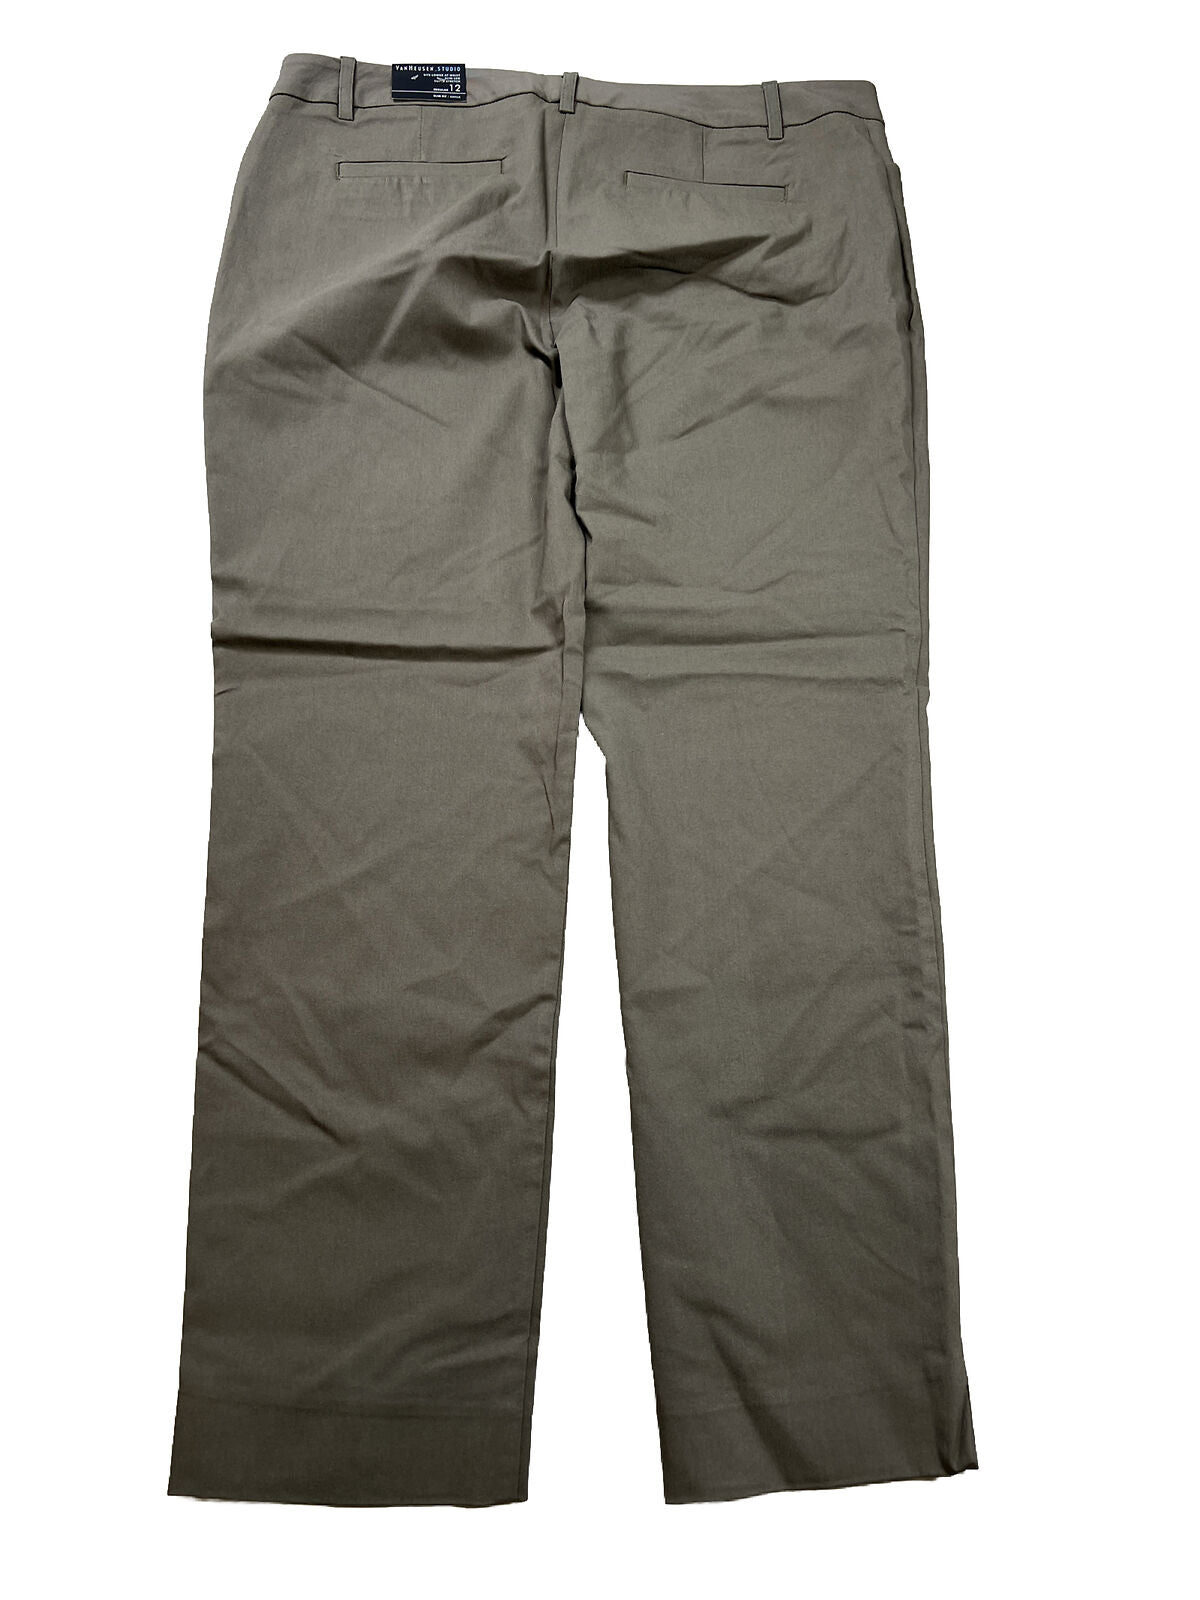 NUEVO Pantalón tobillero ajustado marrón Van Heusen para mujer - 12 Reg